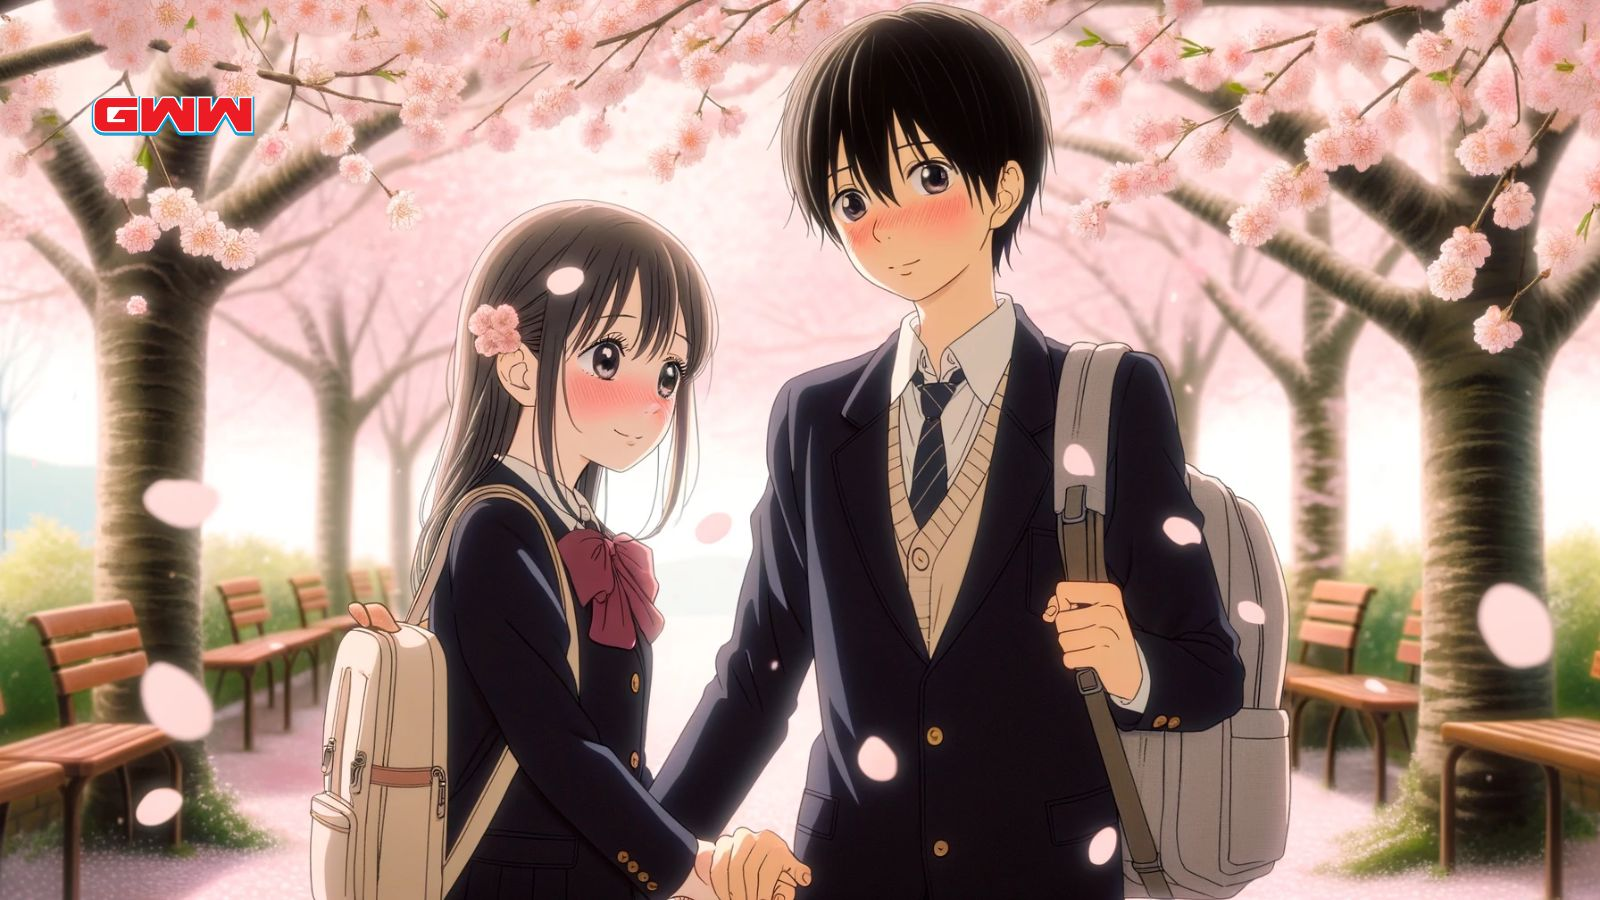 Kazehaya y Sawako bajo los cerezos en flor en el mejor anime de romance